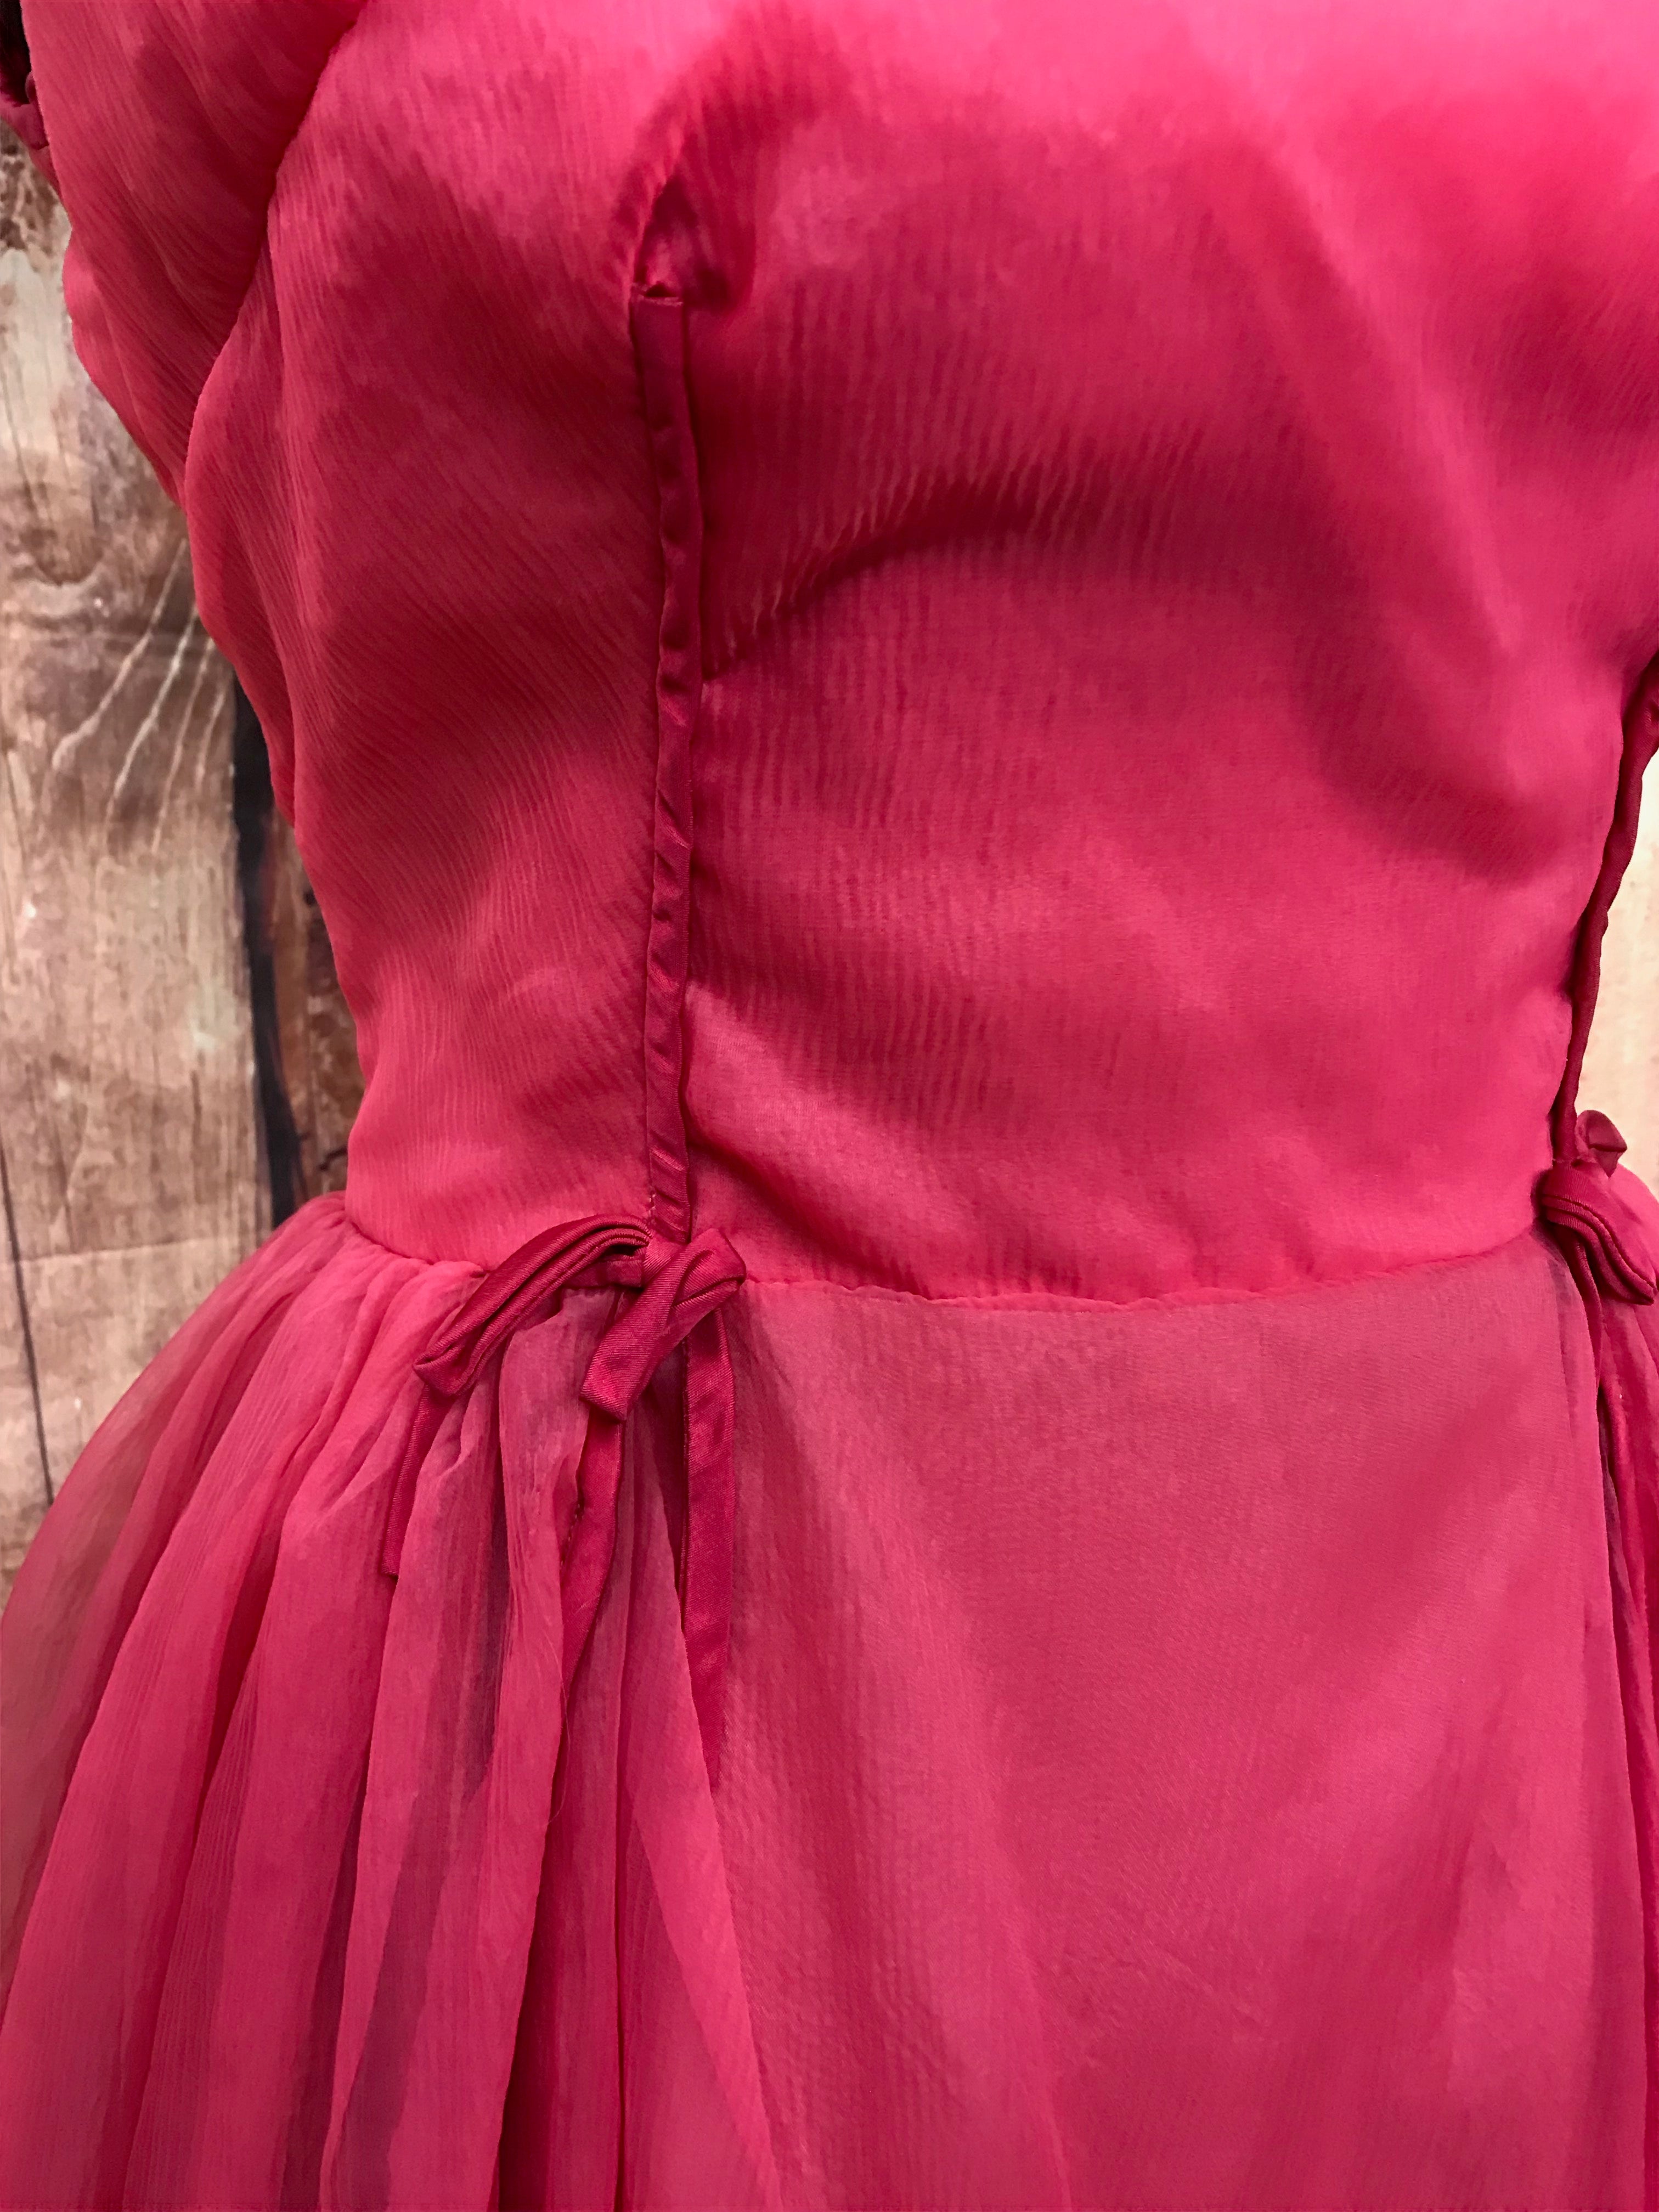 Vintage 50er Jahre Kleid Gr.34 Secondhand pink